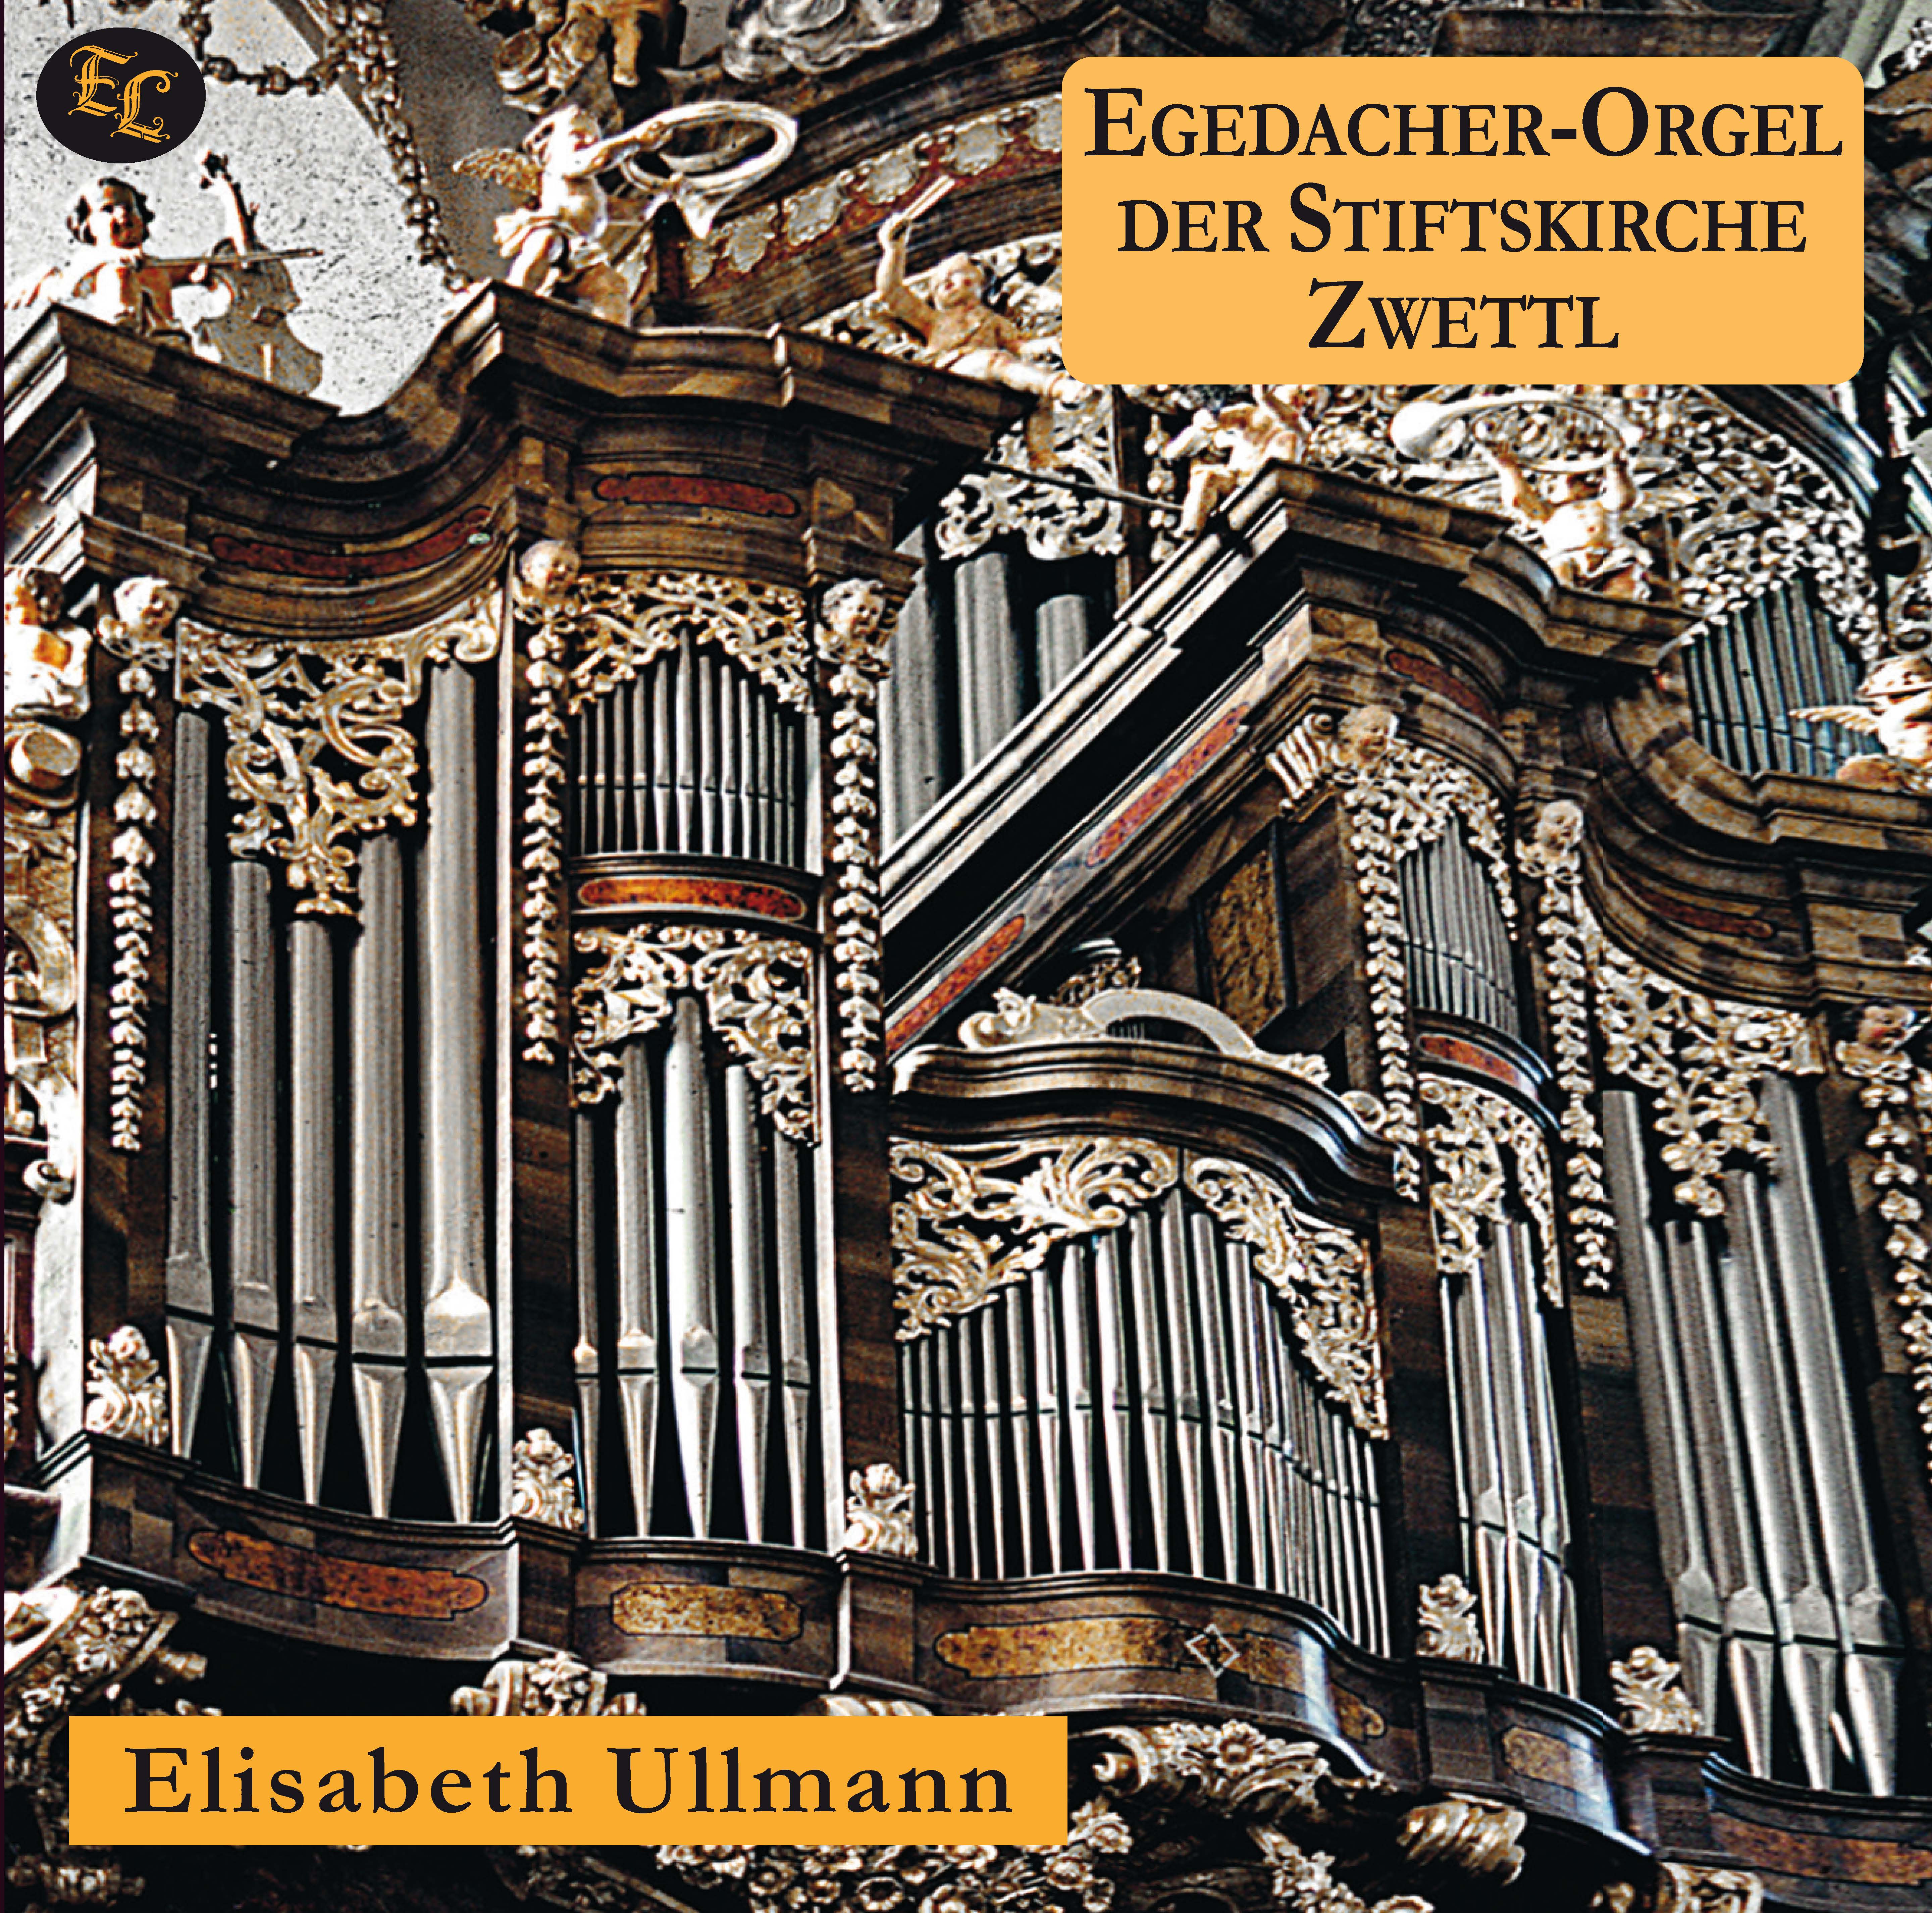 Egedacher-Orgel Zwettl